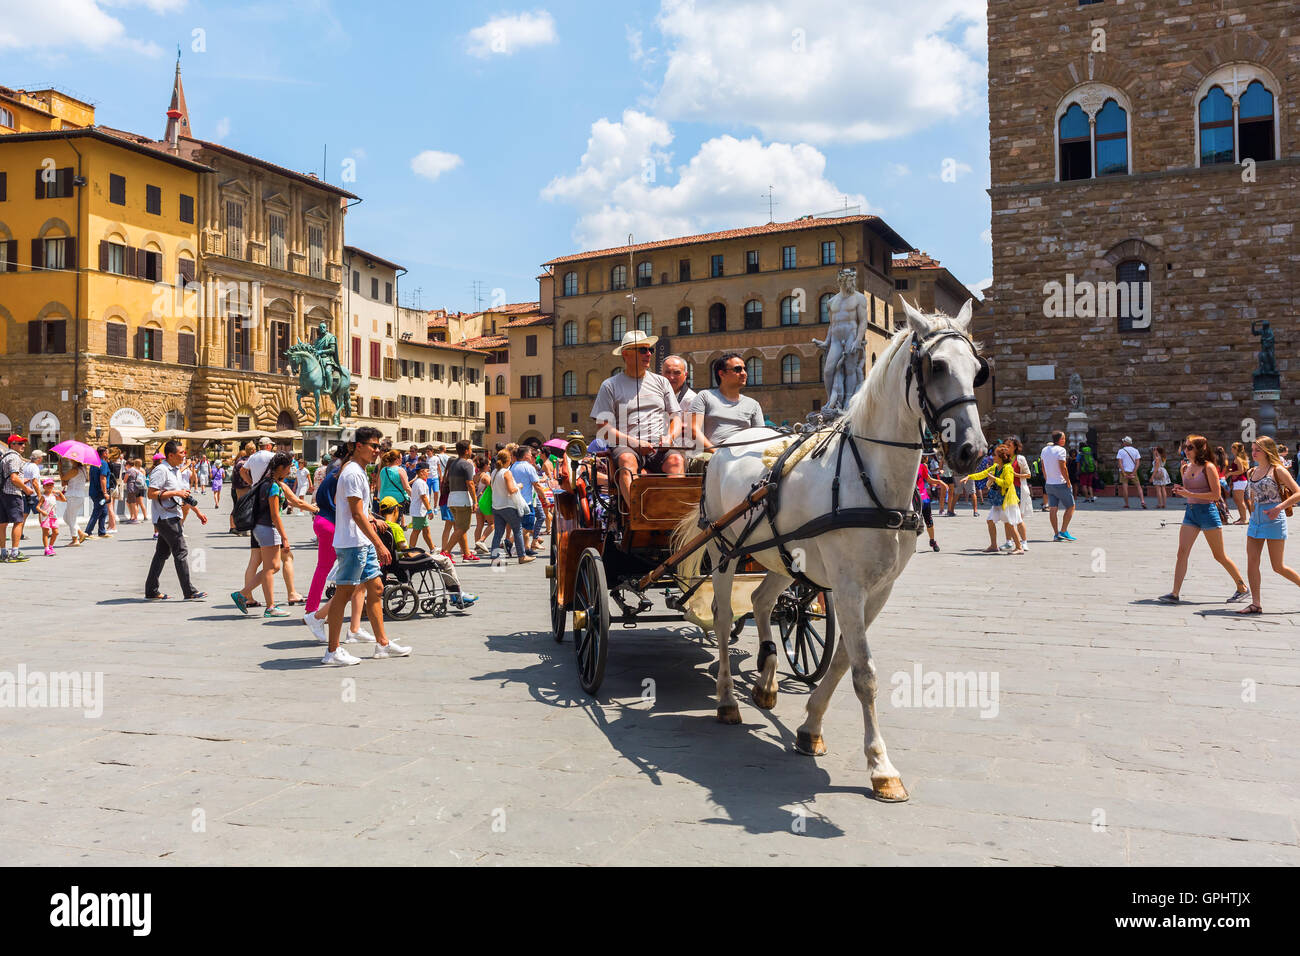 Piazza della Signoria in Florence, Italy Stock Photo